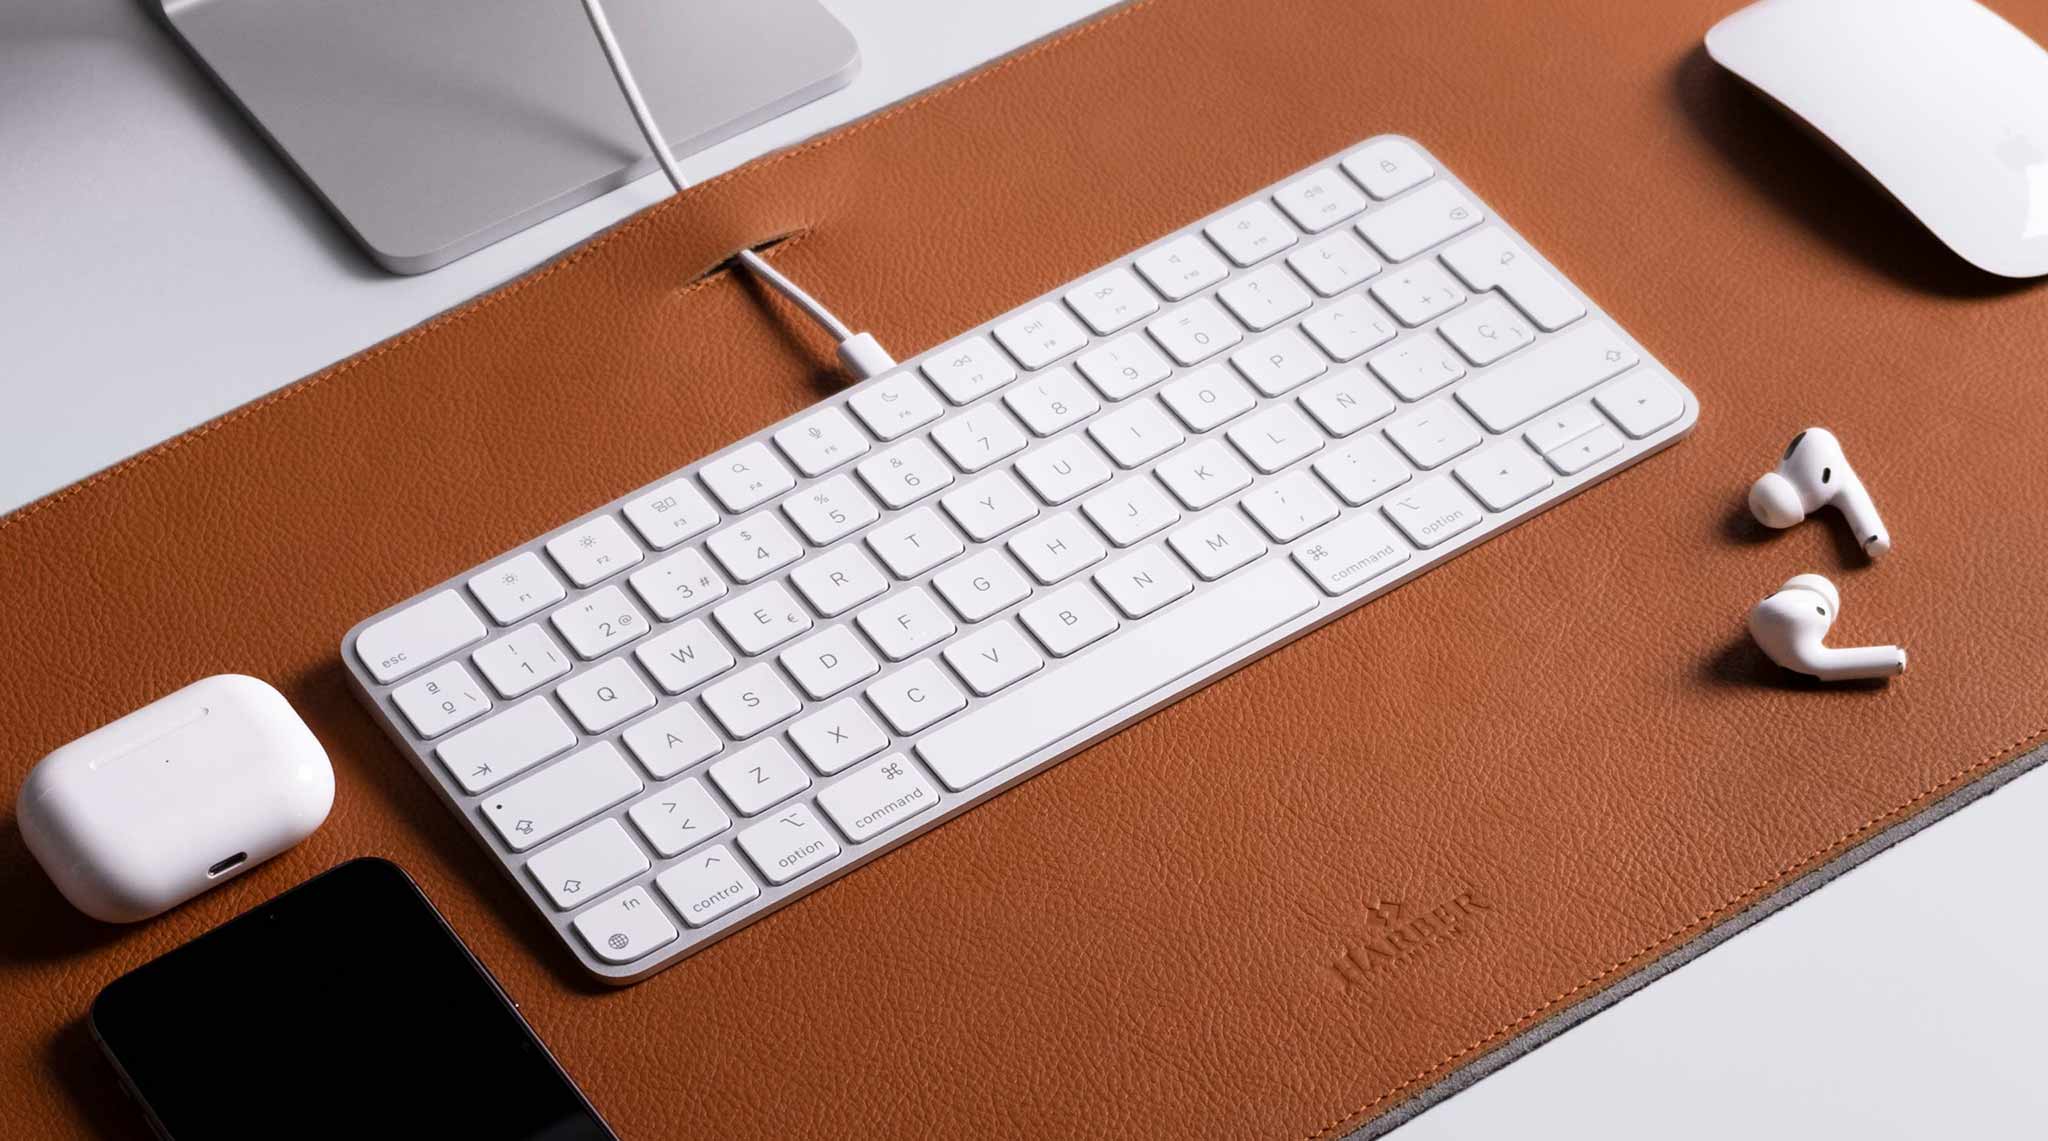 Teclado Apple sobre una alfombrilla de escritorio de cuero plena flor